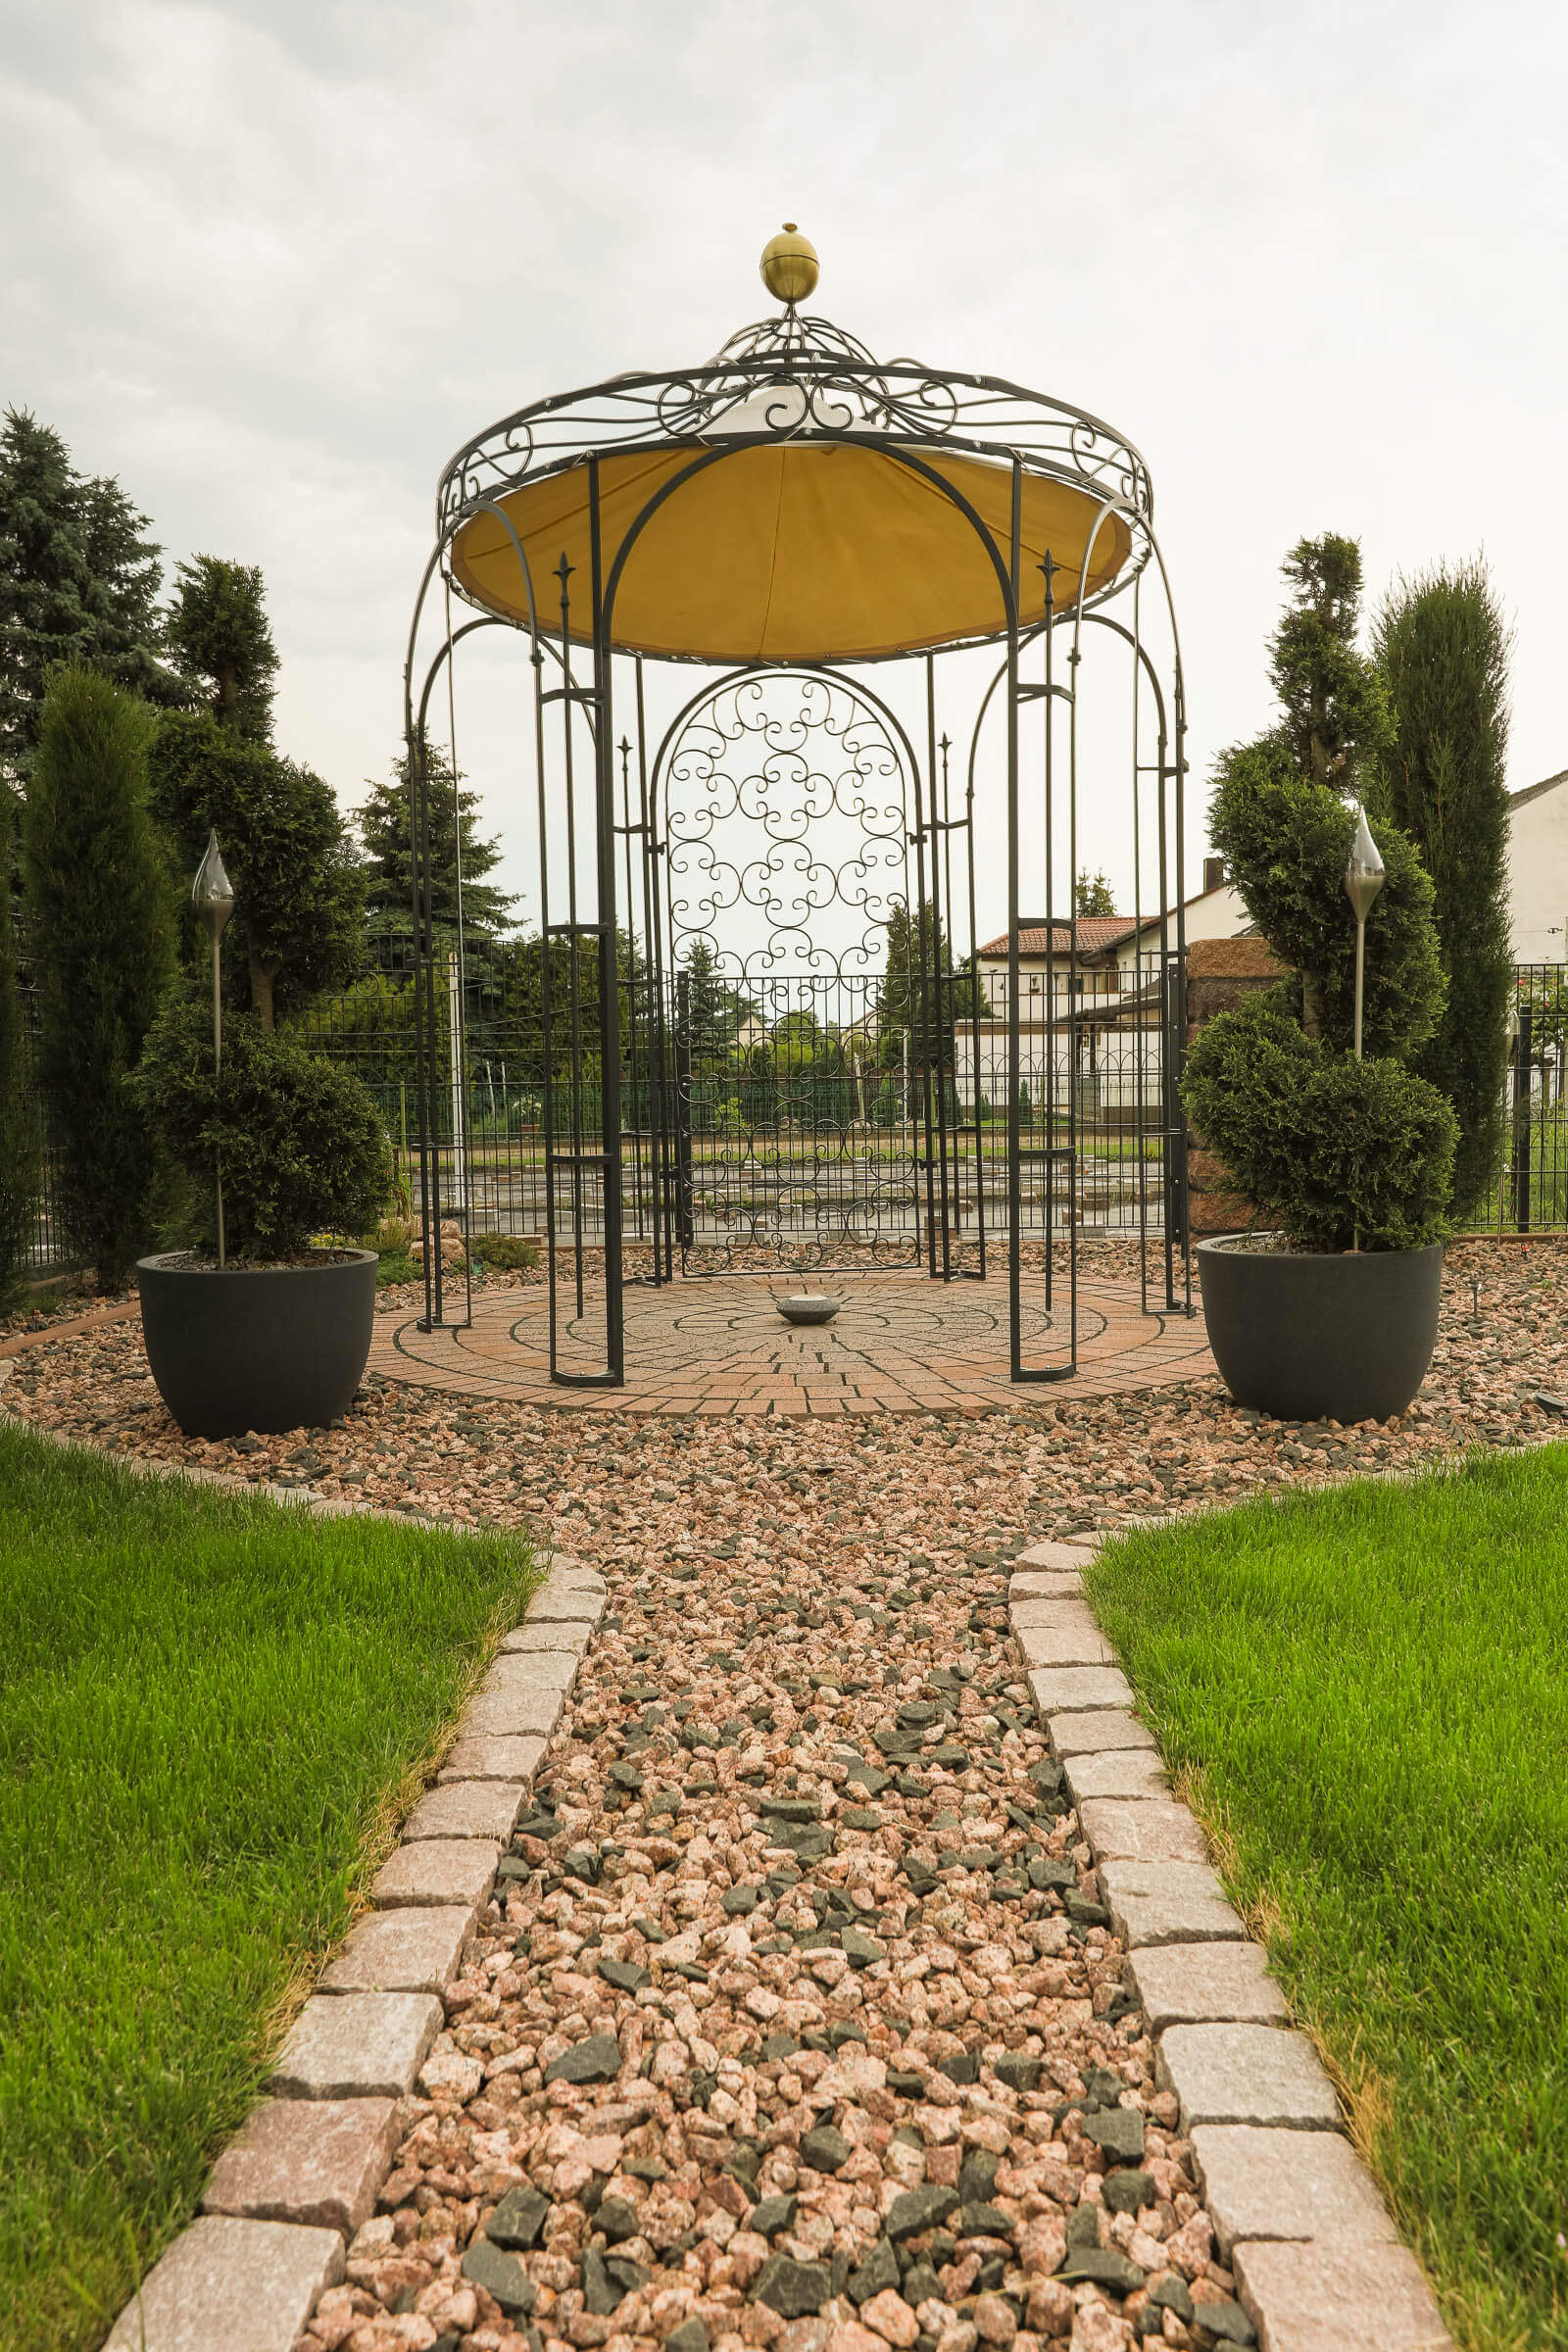 "Pavillon Siena mit Messingkugel und Sonnensegel